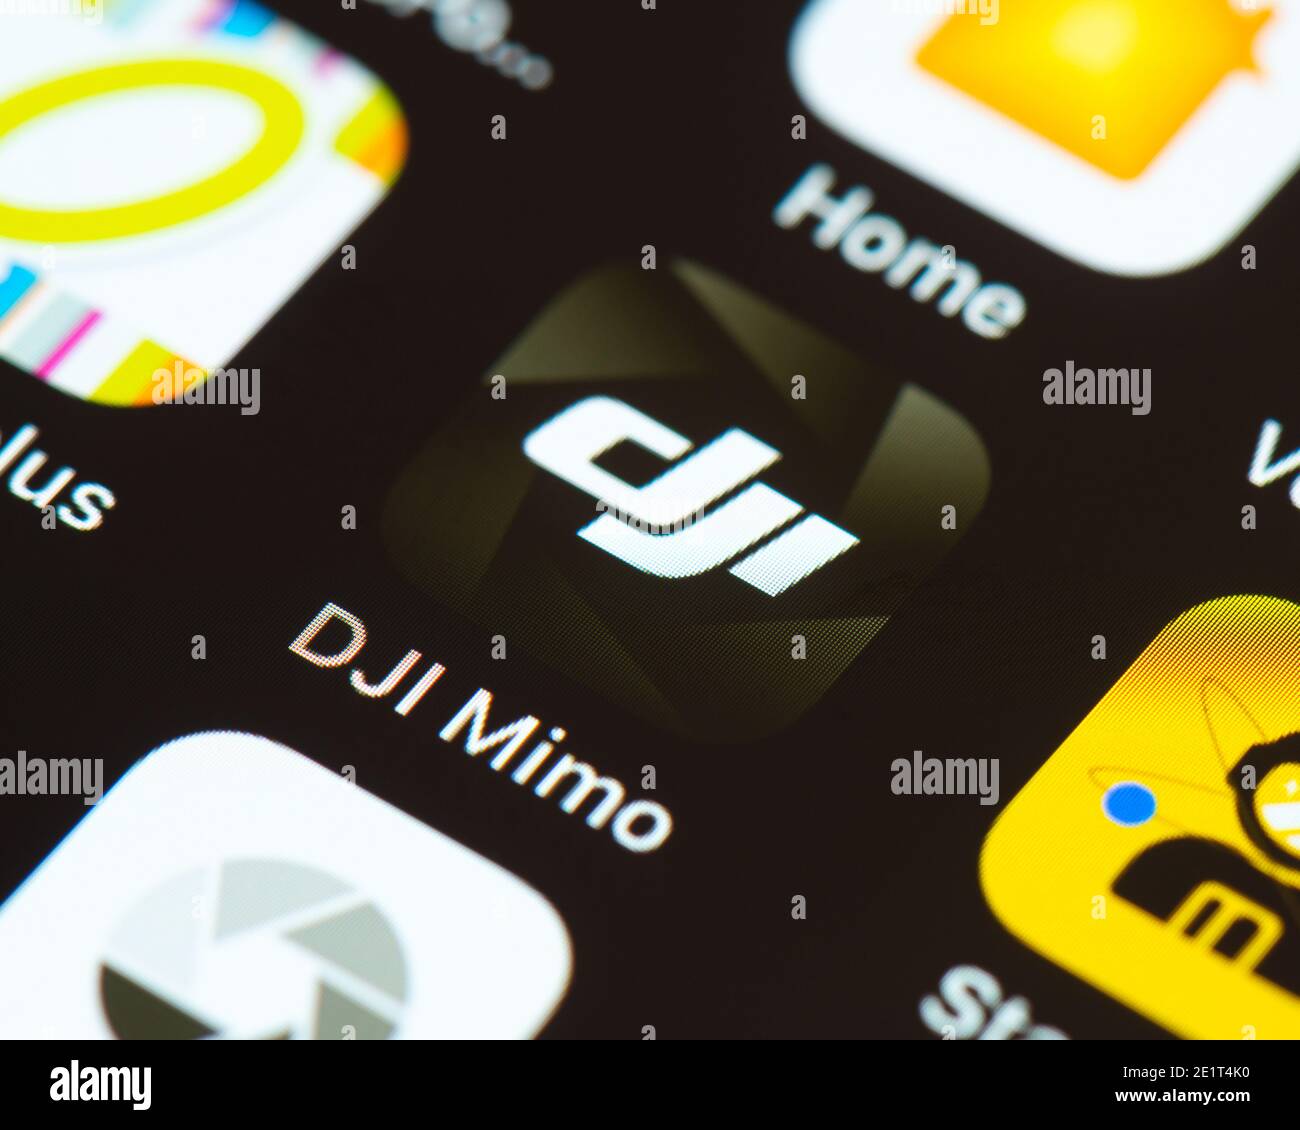 DJI Mimo app icon on Apple iPhone screen Stock Photo - Alamy